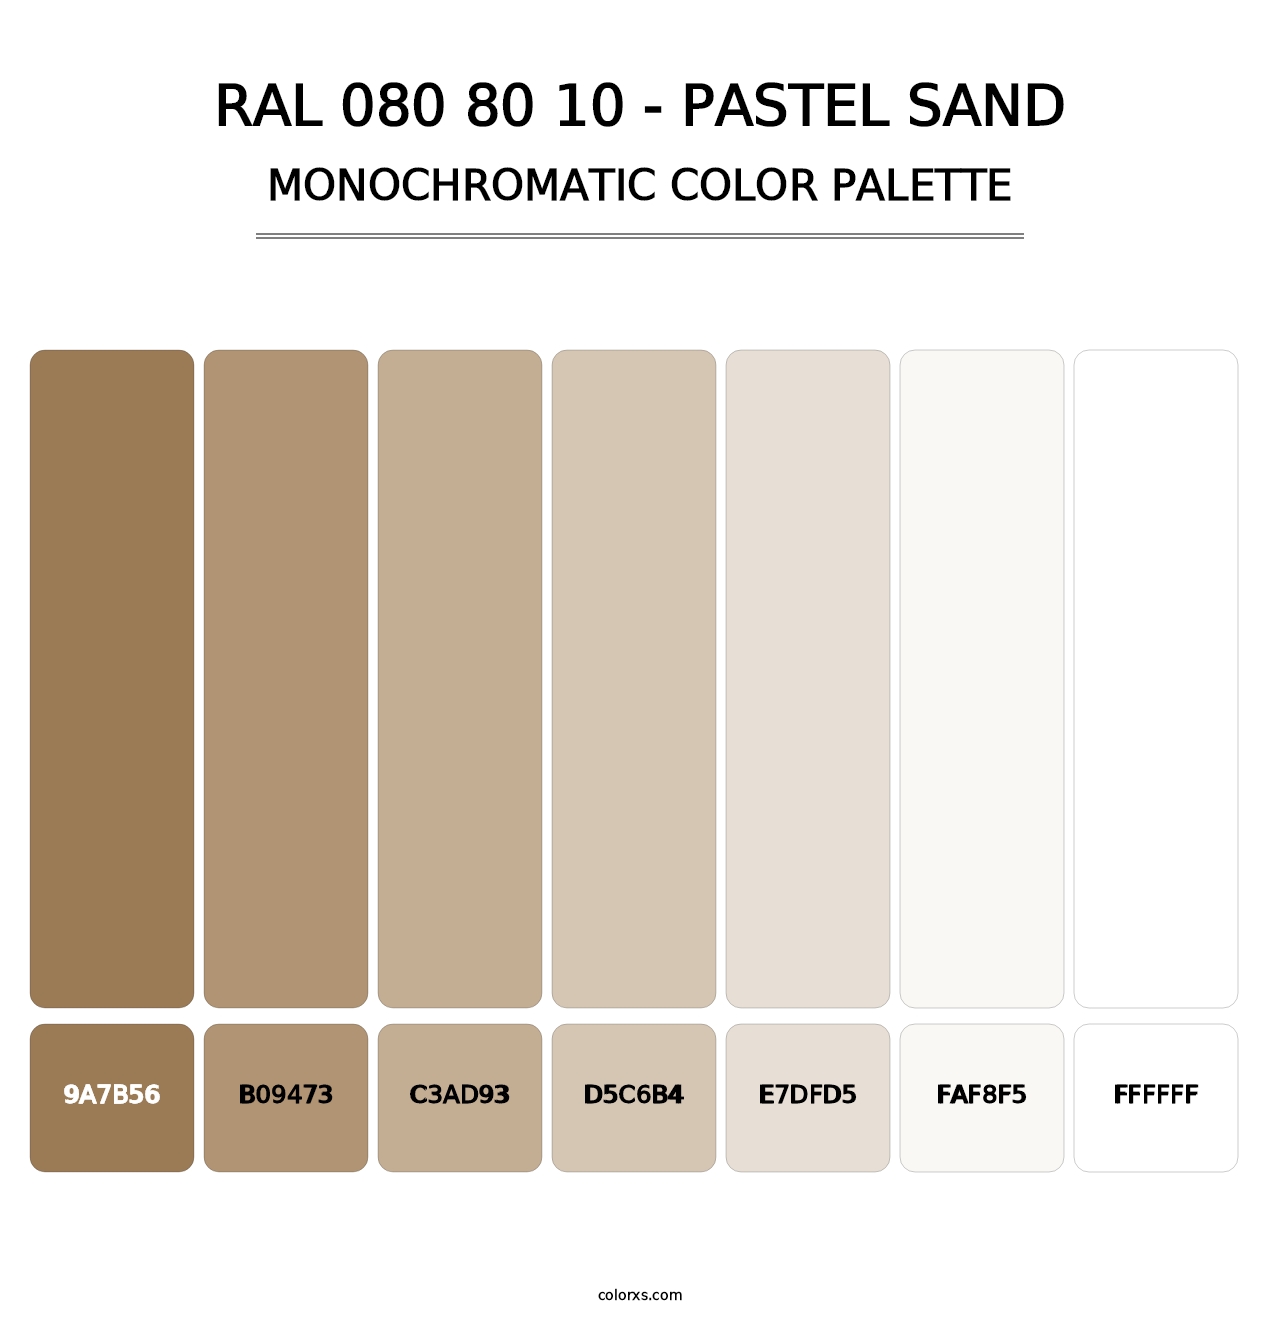 RAL 080 80 10 - Pastel Sand - Monochromatic Color Palette